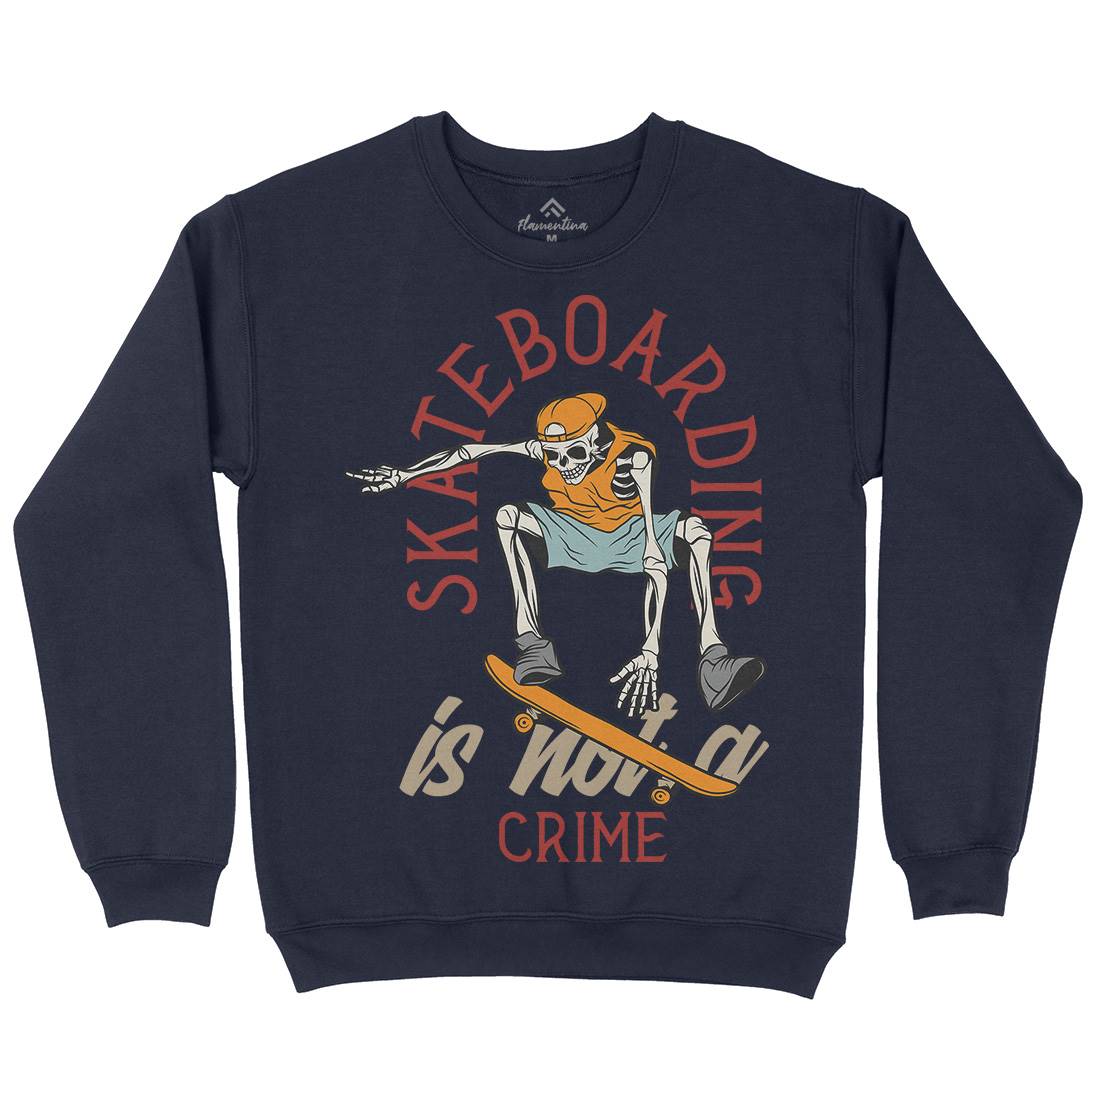 Skateboarding Crime Mens Crew Neck Sweatshirt Skate D975